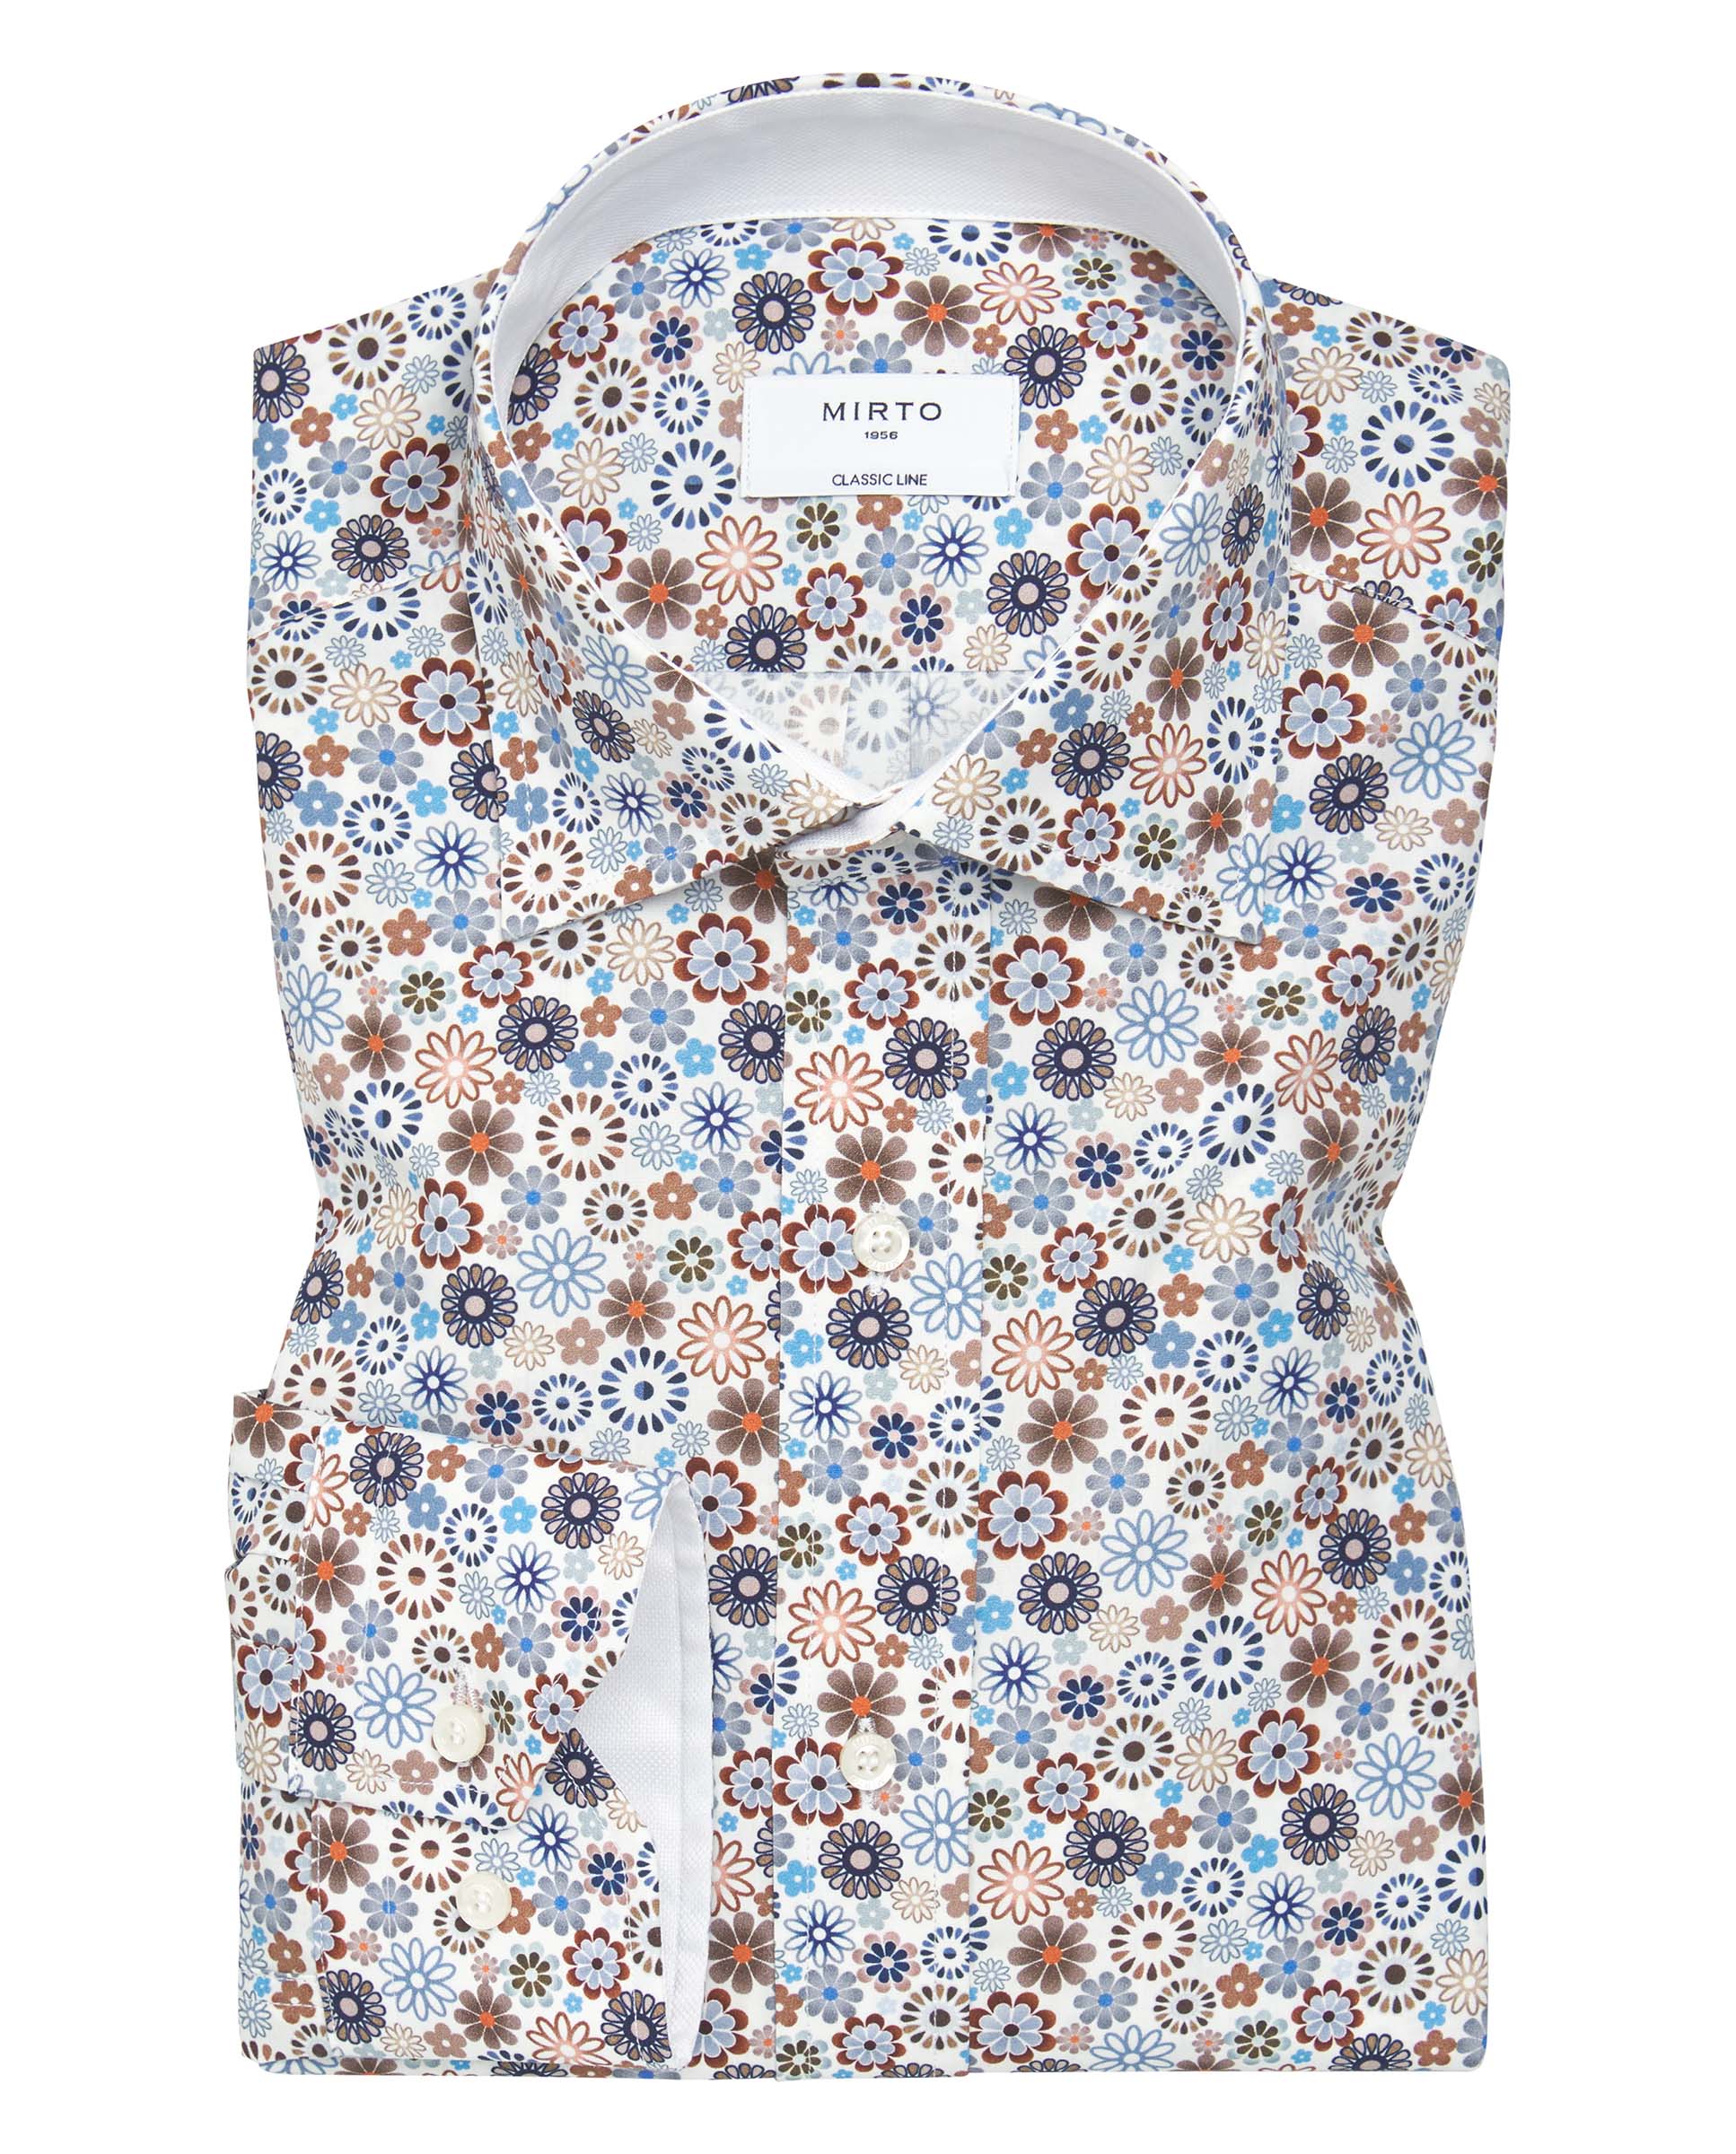 Camisa casual de algodón estampado floral by MIRTO